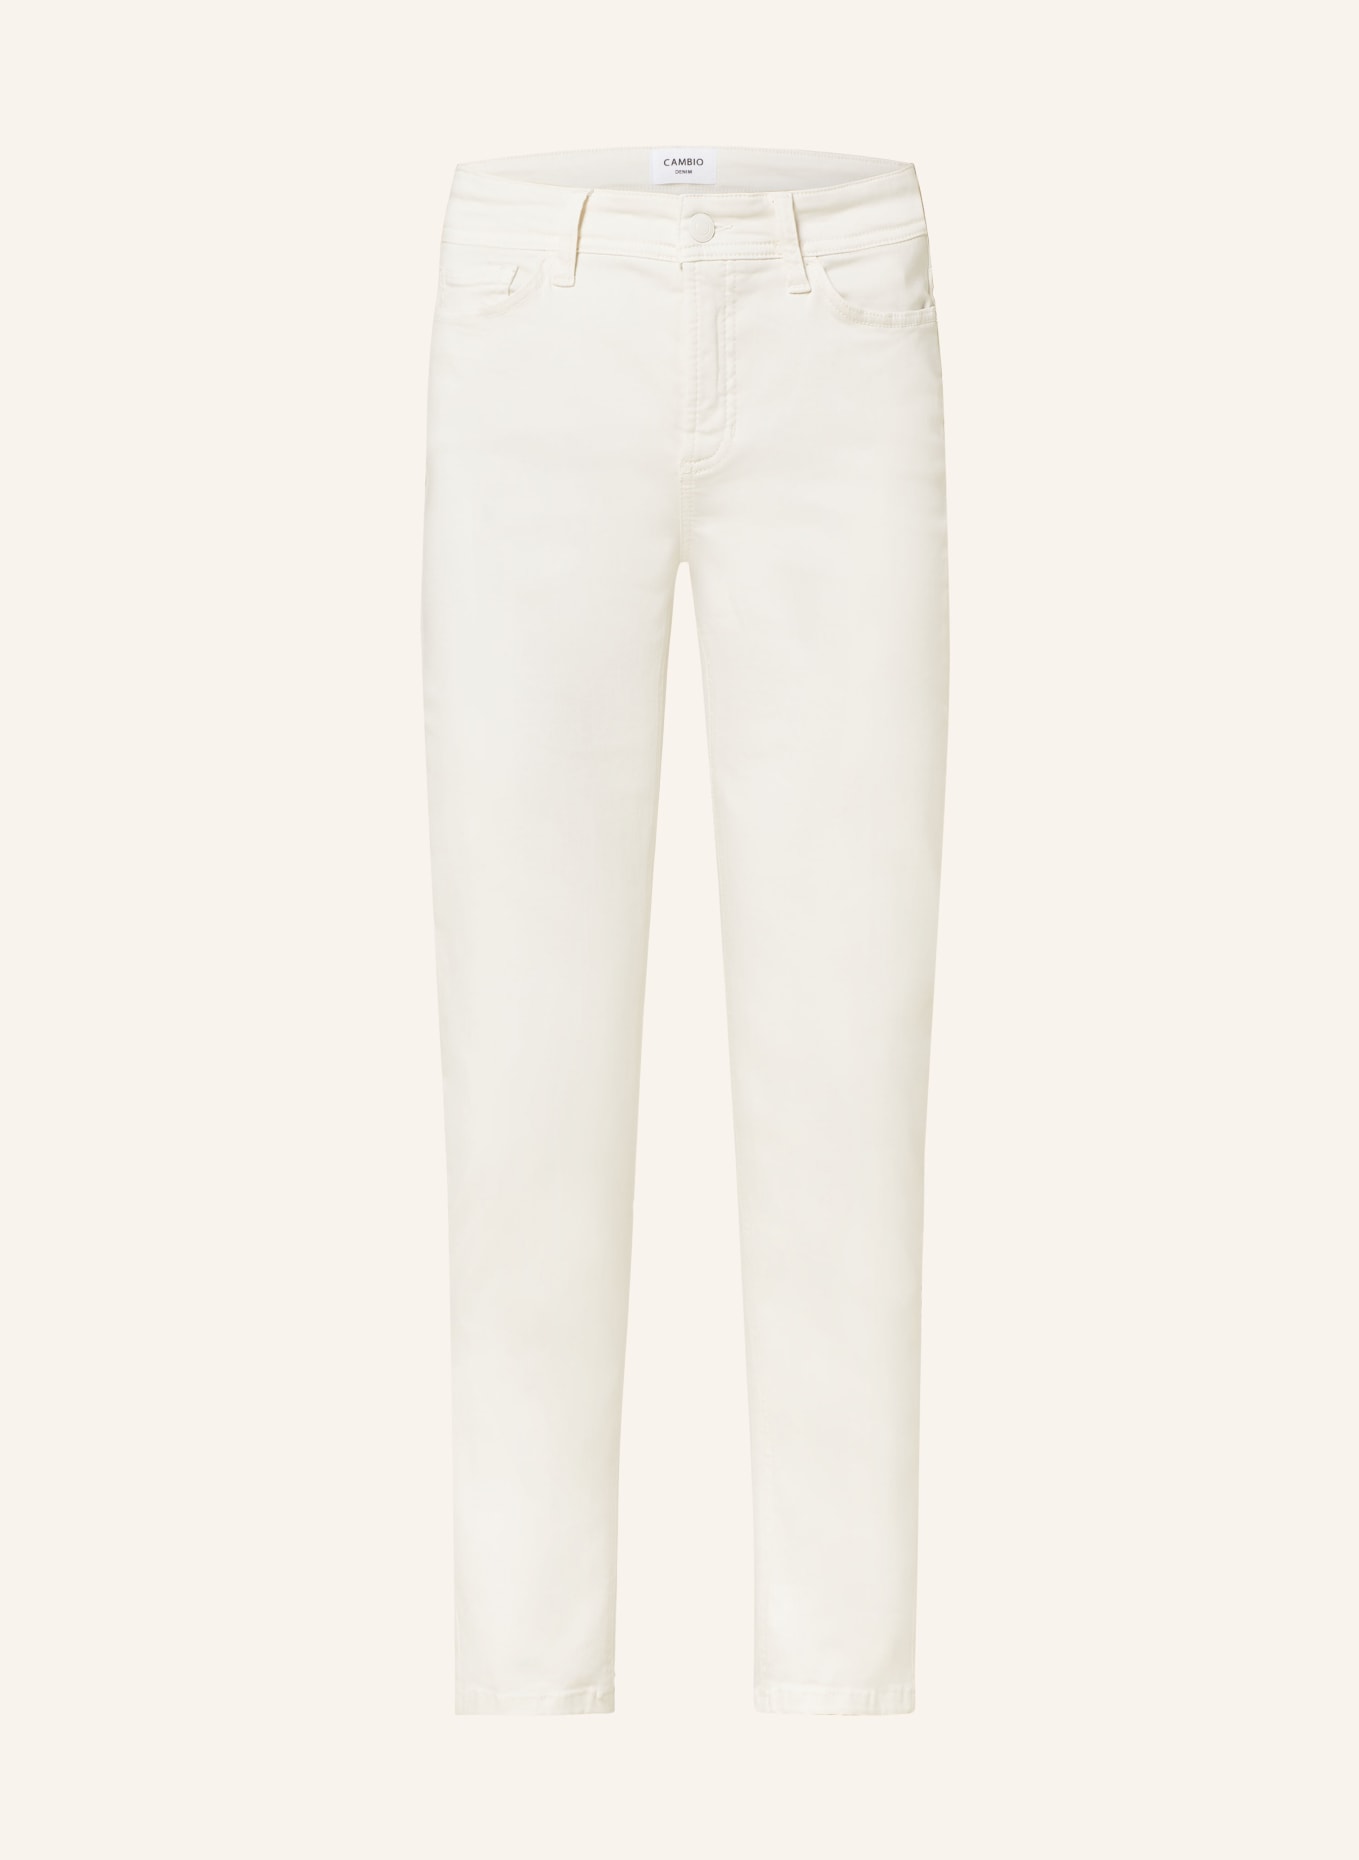 CAMBIO Skinny Jeans PIPER, Farbe: 706 sand (Bild 1)